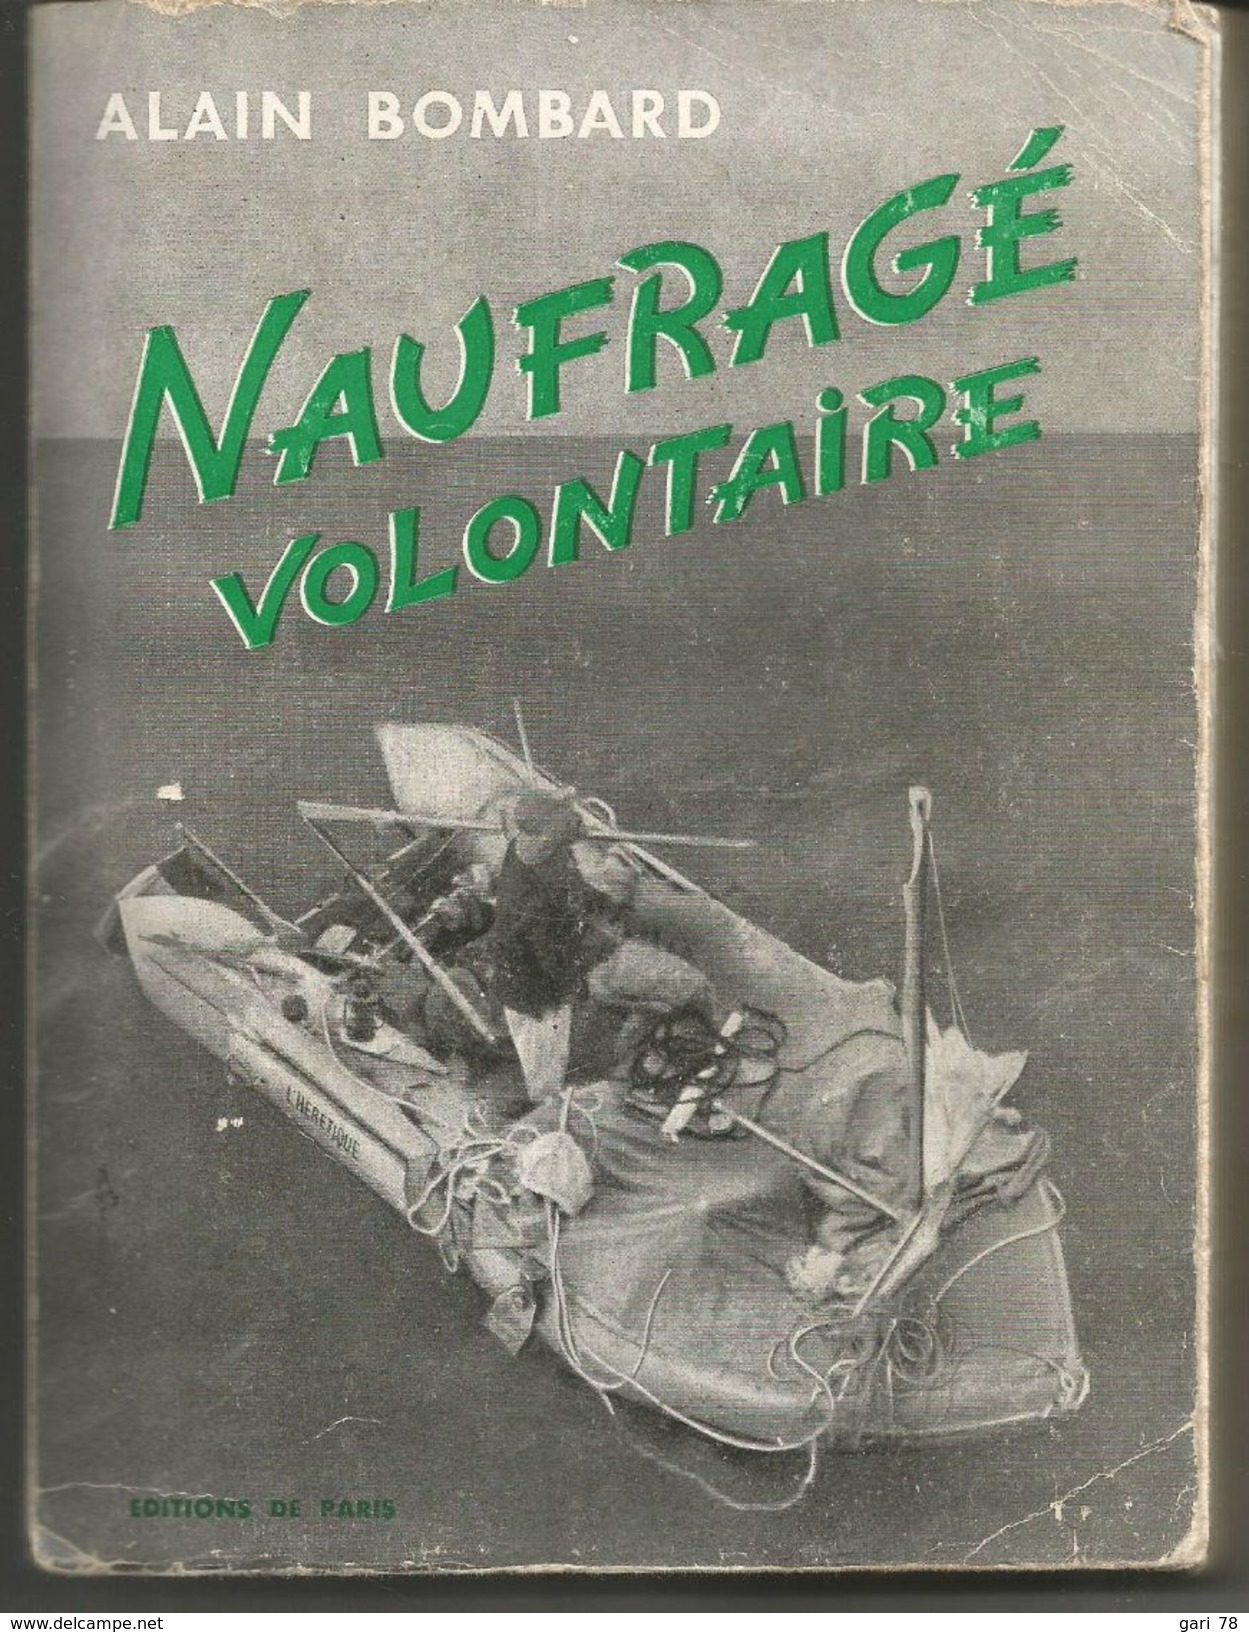 Alain BOMBARD Naufragé Volontaire - Editions De Paris 1953 - Histoire